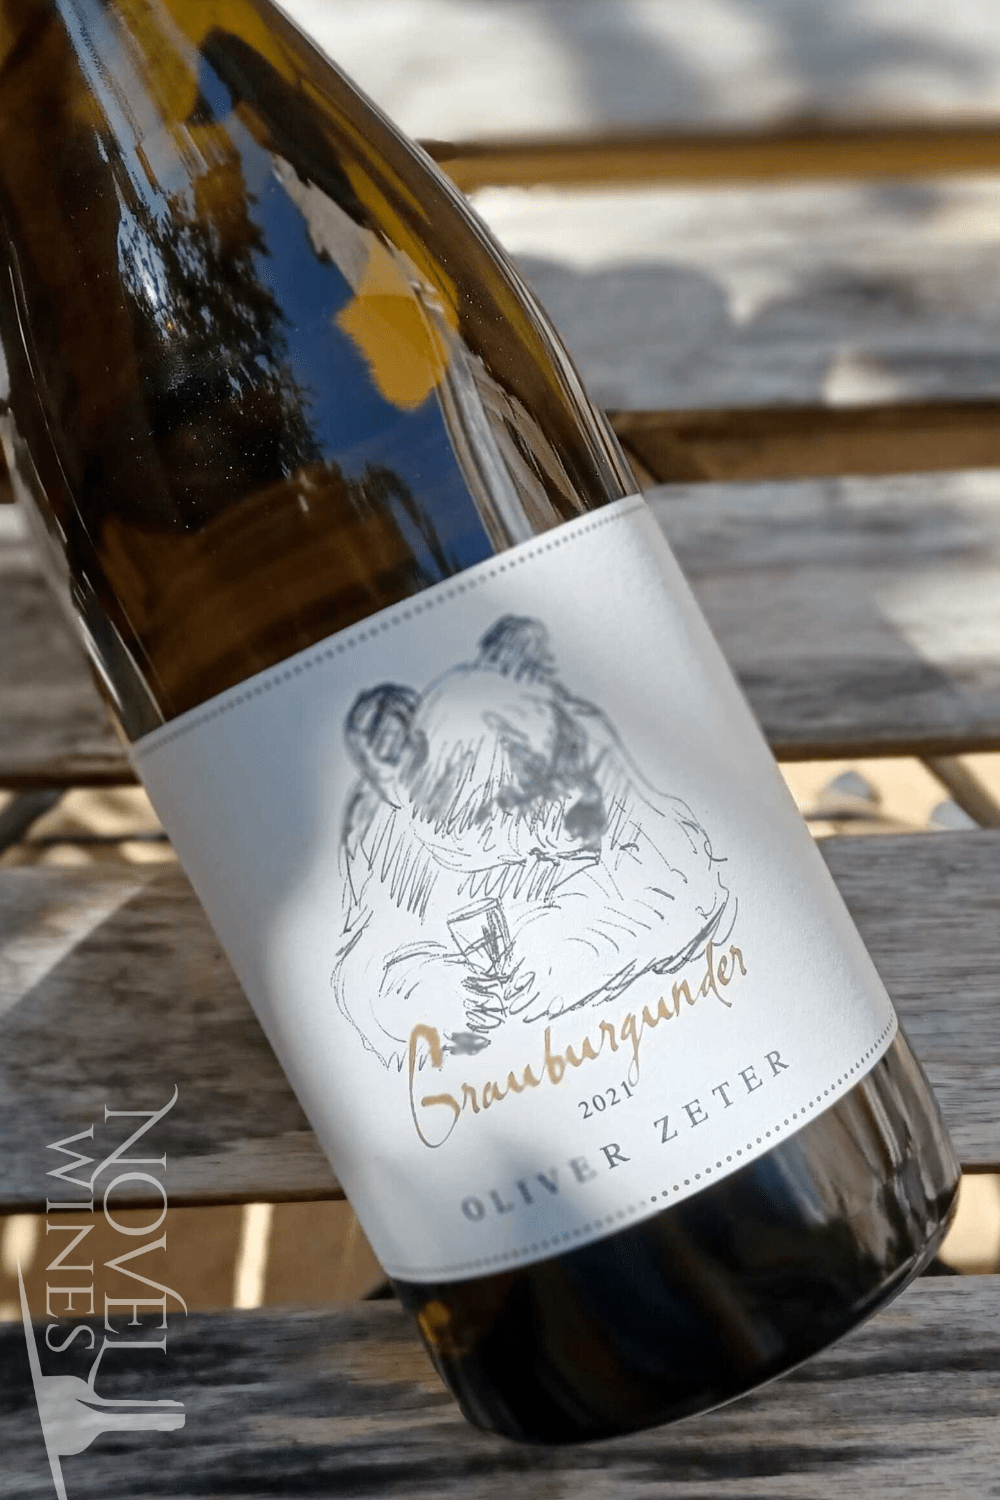 Oliver Zeter White Wine Oliver Zeter Grauburgunder 2021, Germany